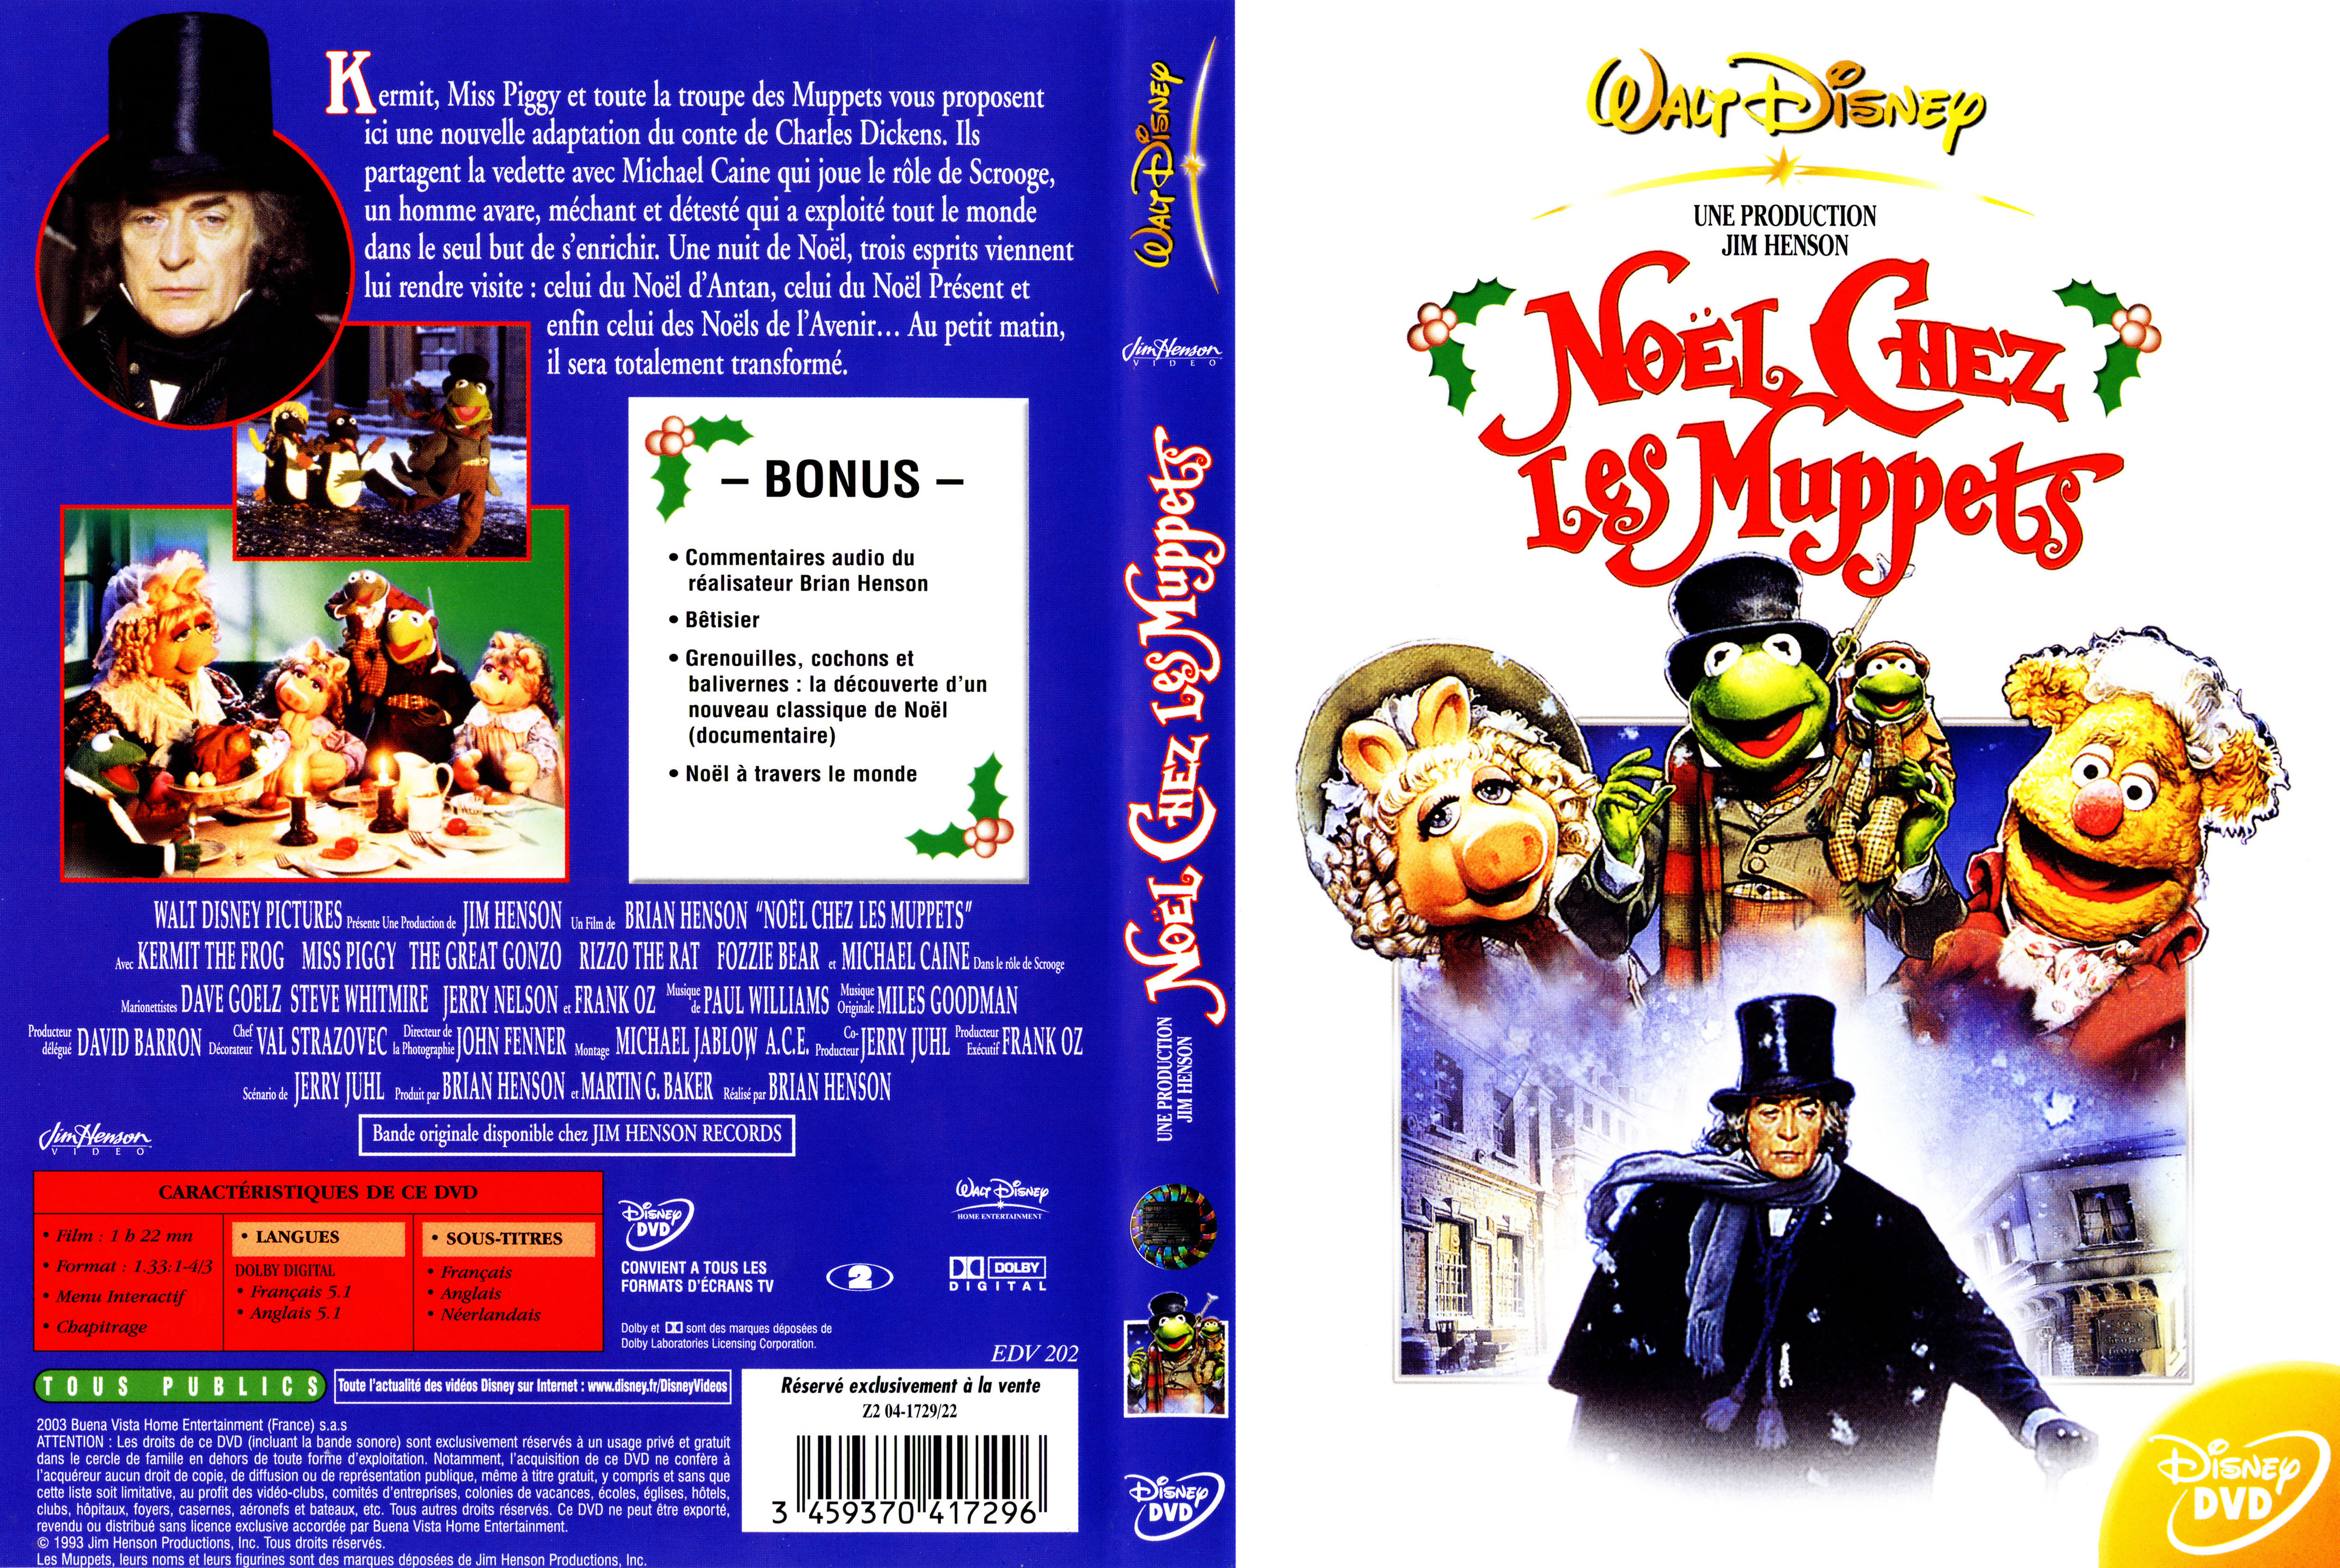 Jaquette DVD Noel chez les muppets